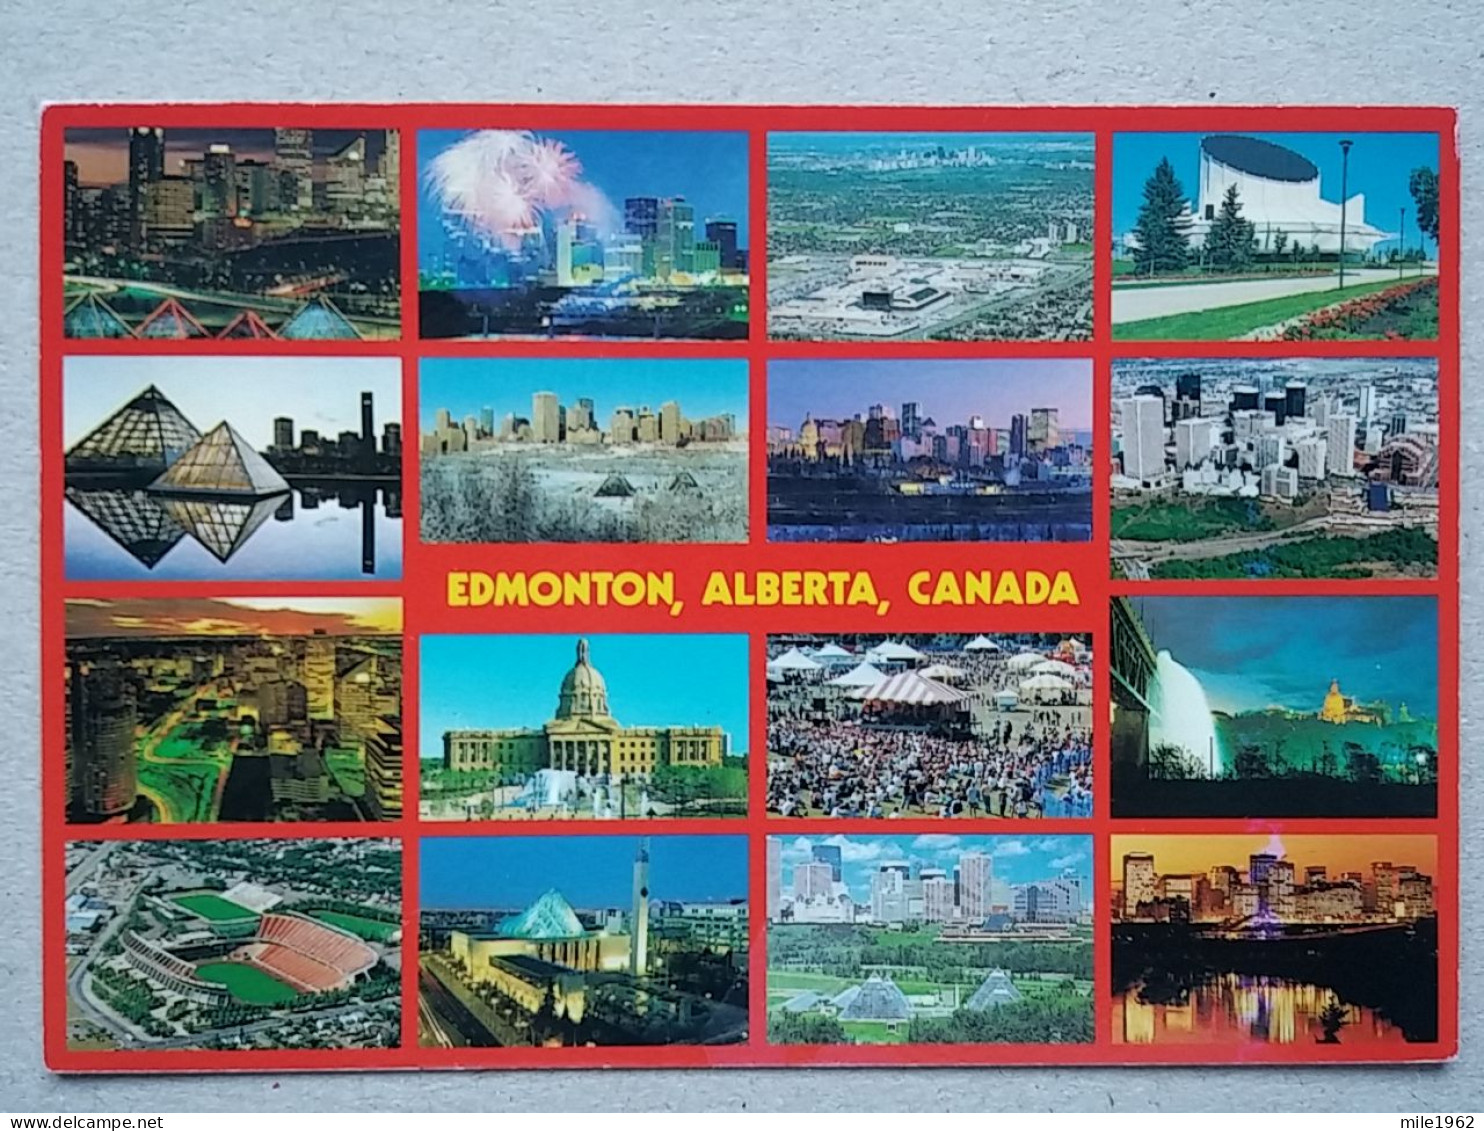 Kov 570-1- CANADA, EDMONTON, ALBERTA - Edmonton